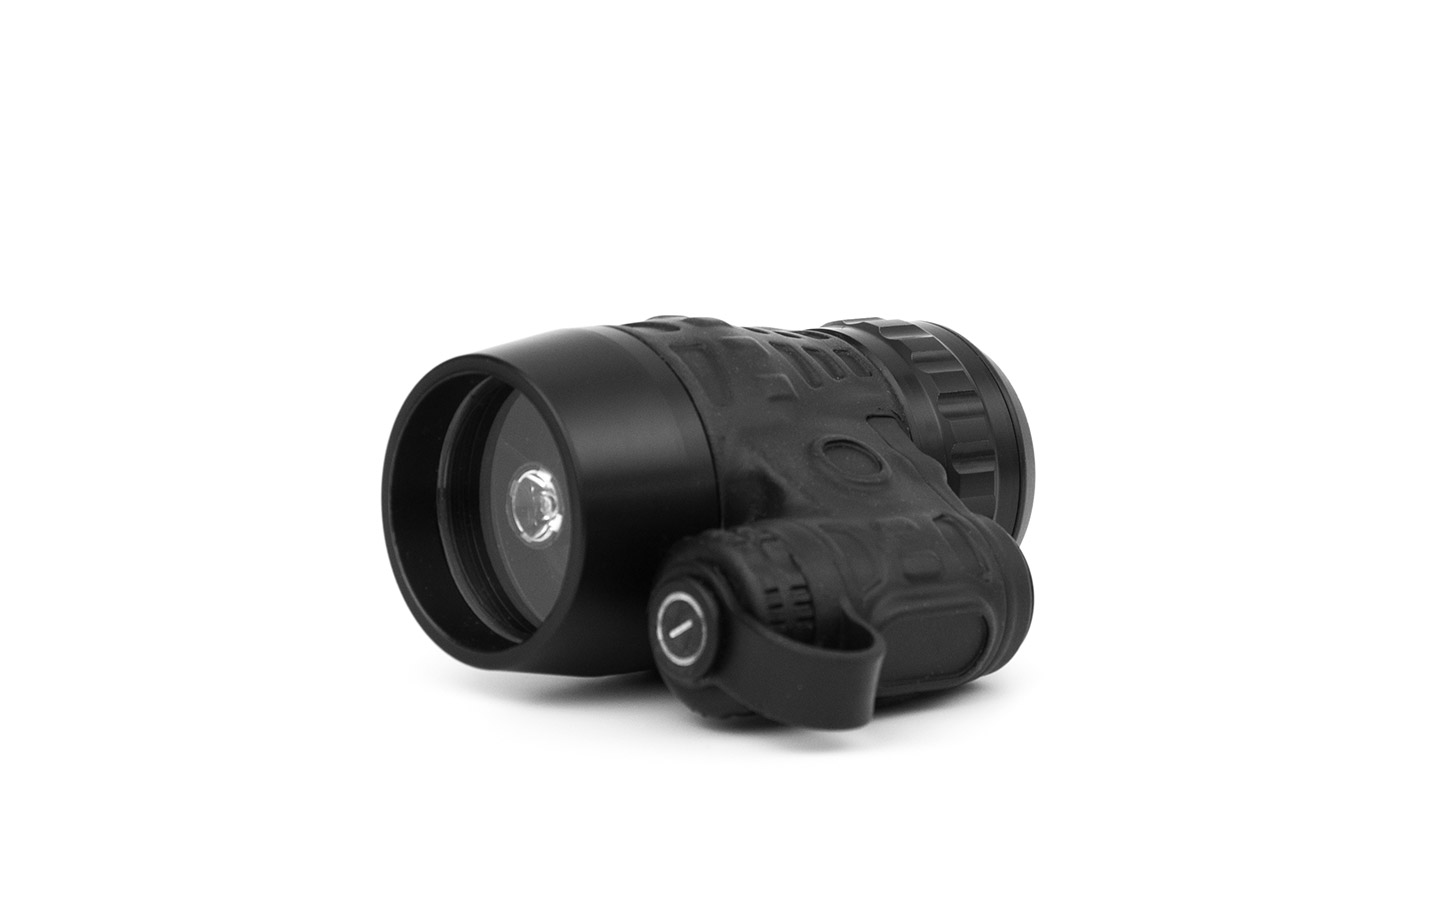 GCU-OSD15 pinhole camera detector